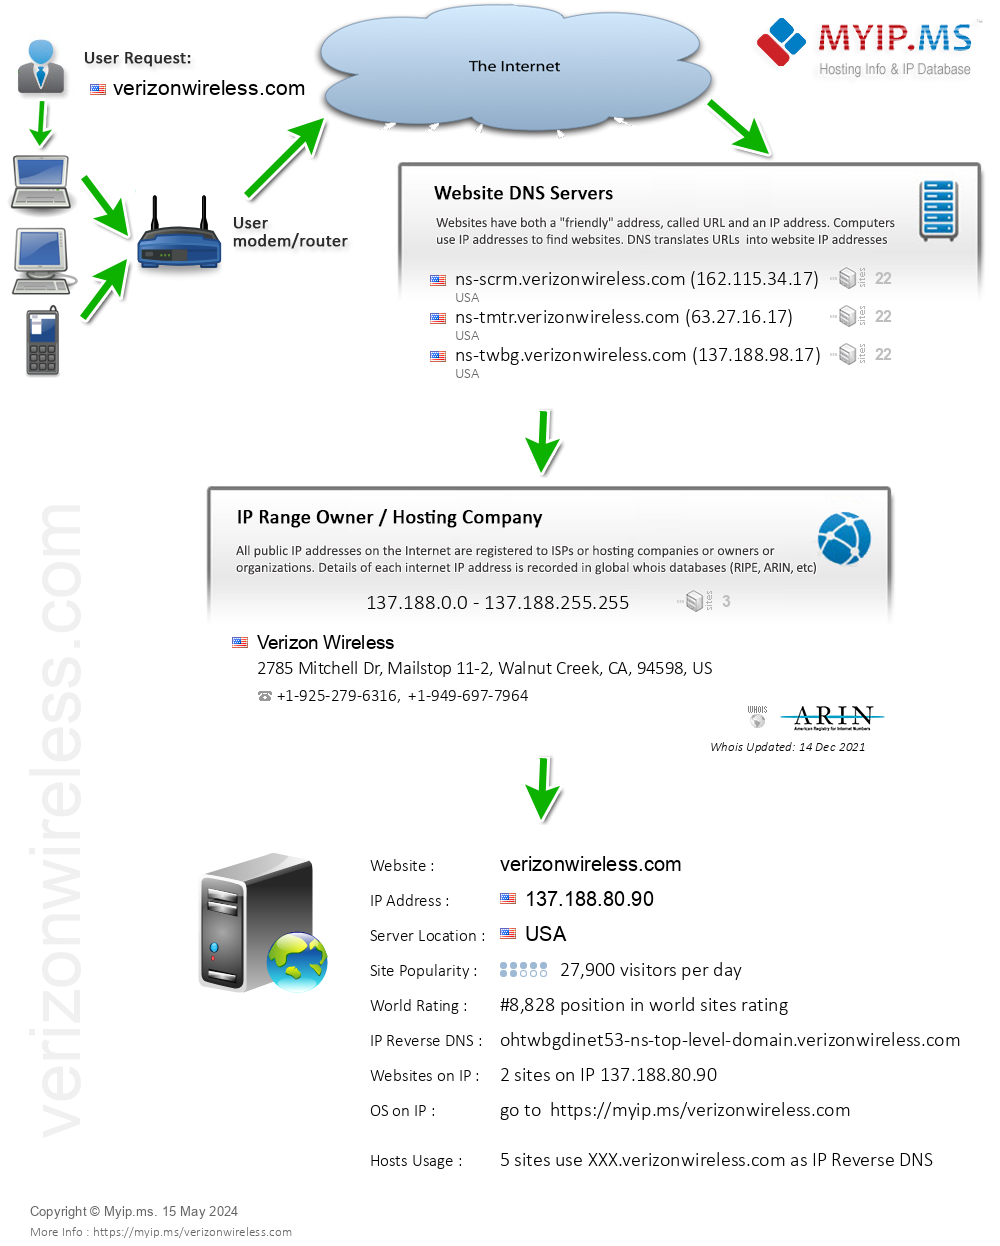 Verizonwireless.com - Website Hosting Visual IP Diagram